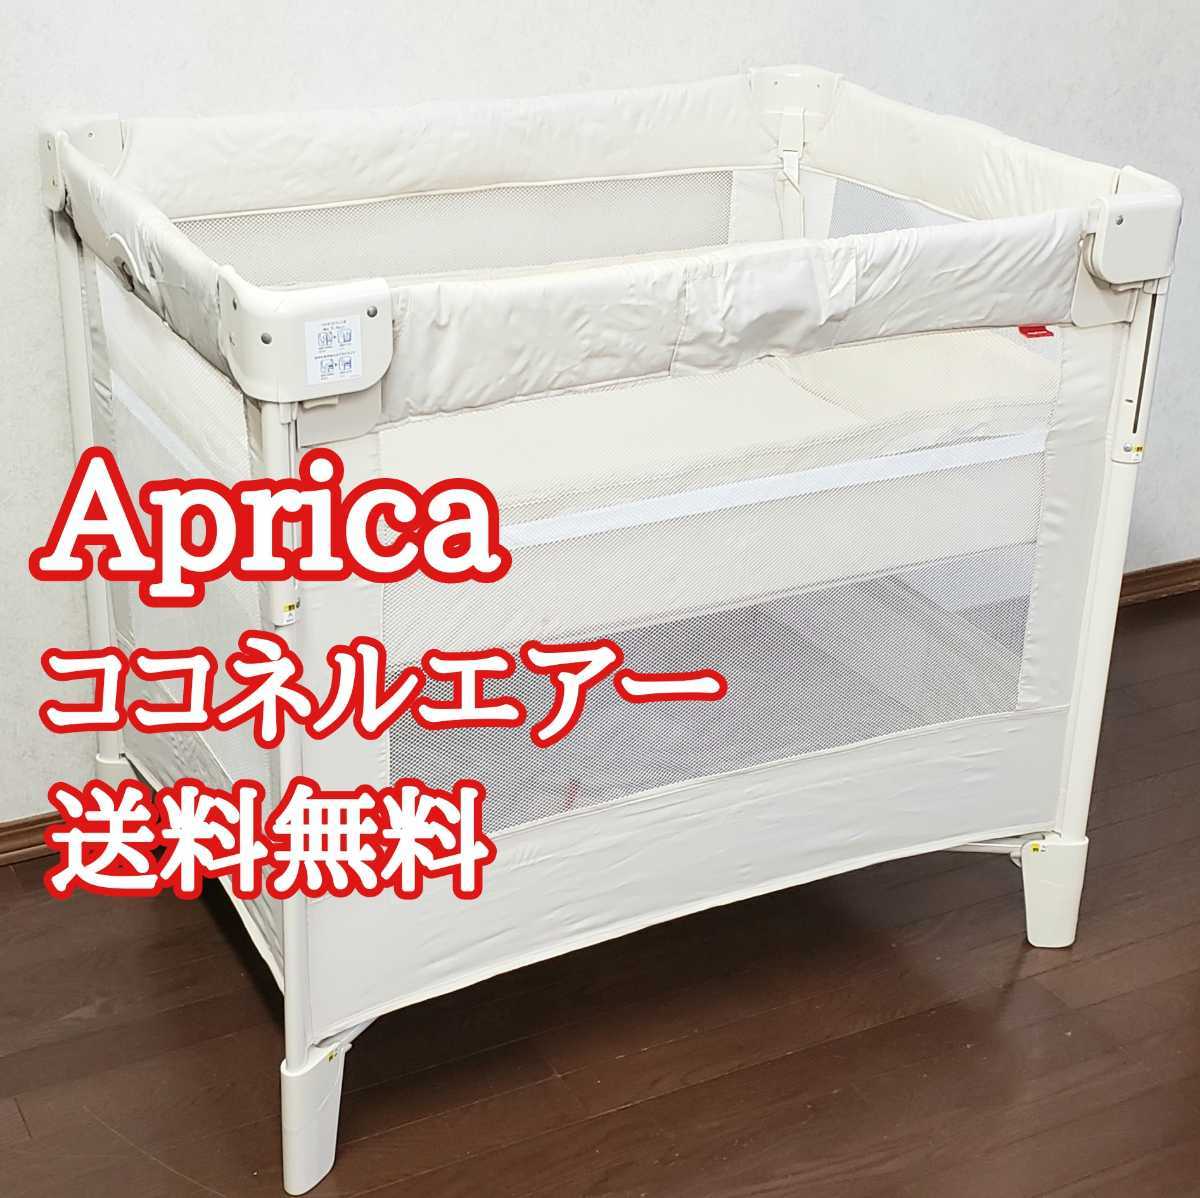 激安本物 (美品)Aprica ココネルエアーAB コンパクトにたためるベビーベッド ベッド